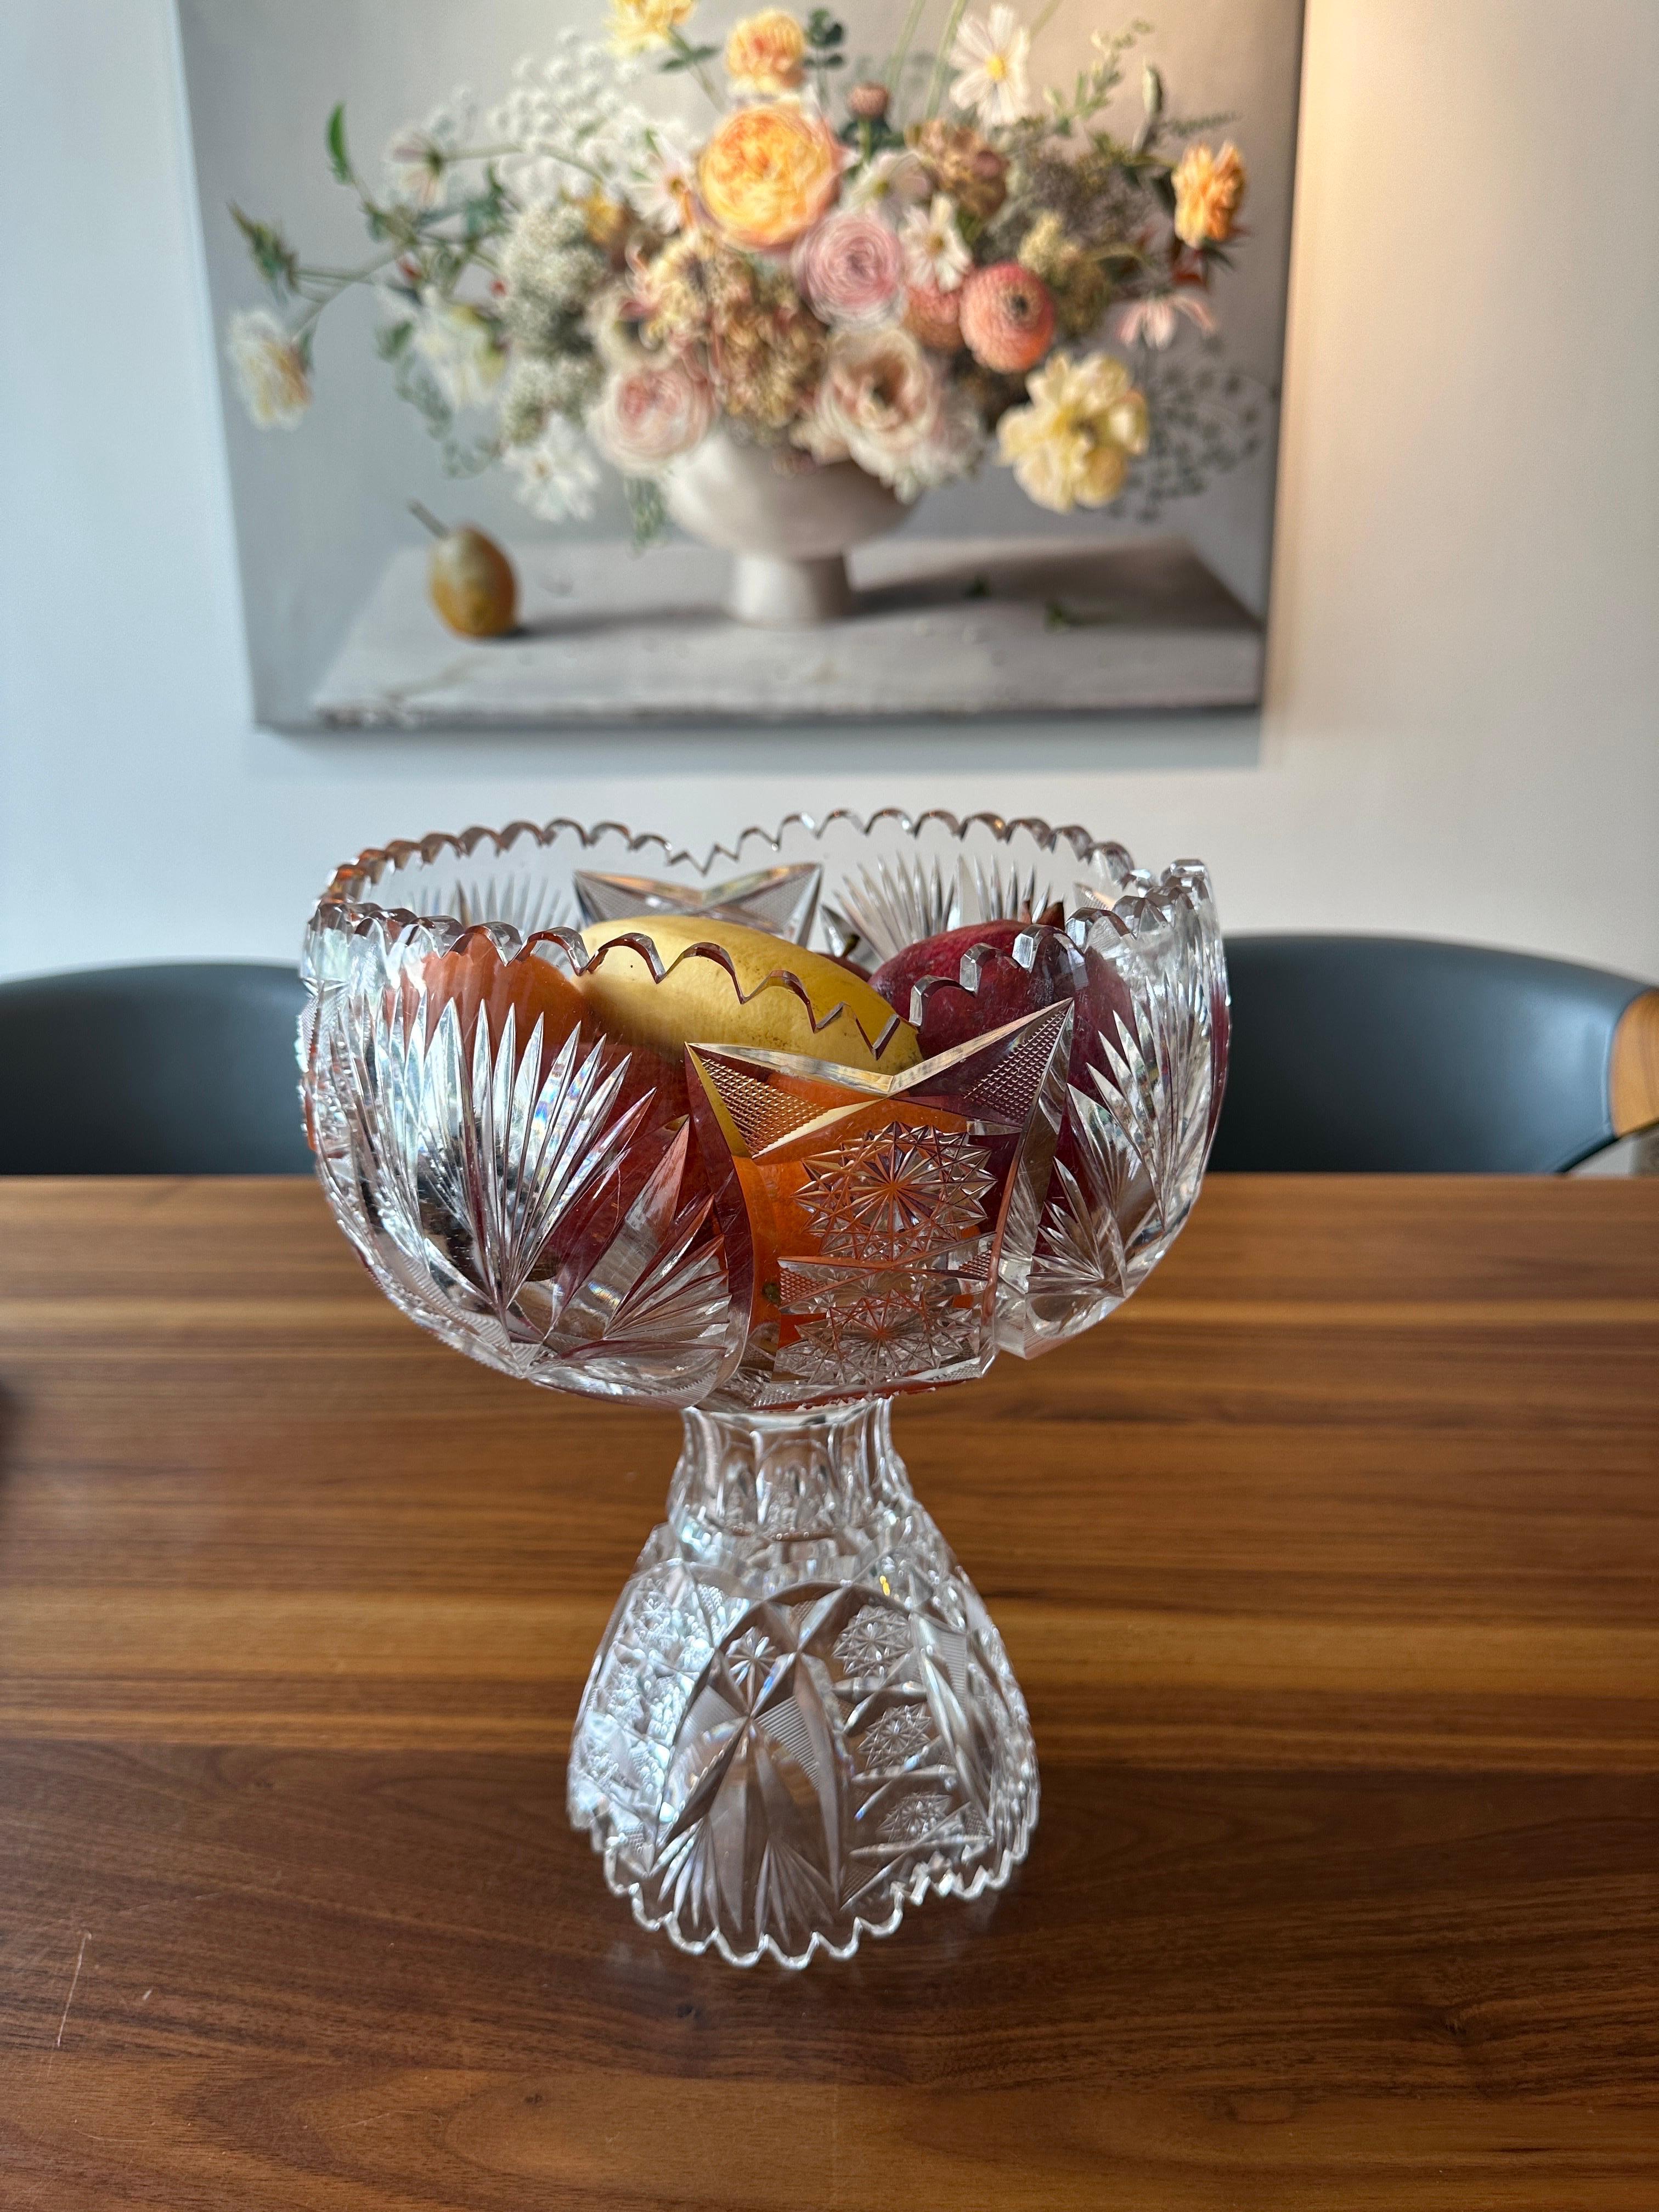 Diese Servierschale kann in zwei Teile zerlegt werden. Dieses praktische und schöne Kristallglas, das sich in eine Schale und eine Vase verwandeln lässt, wurde um 1900-1920 hergestellt.